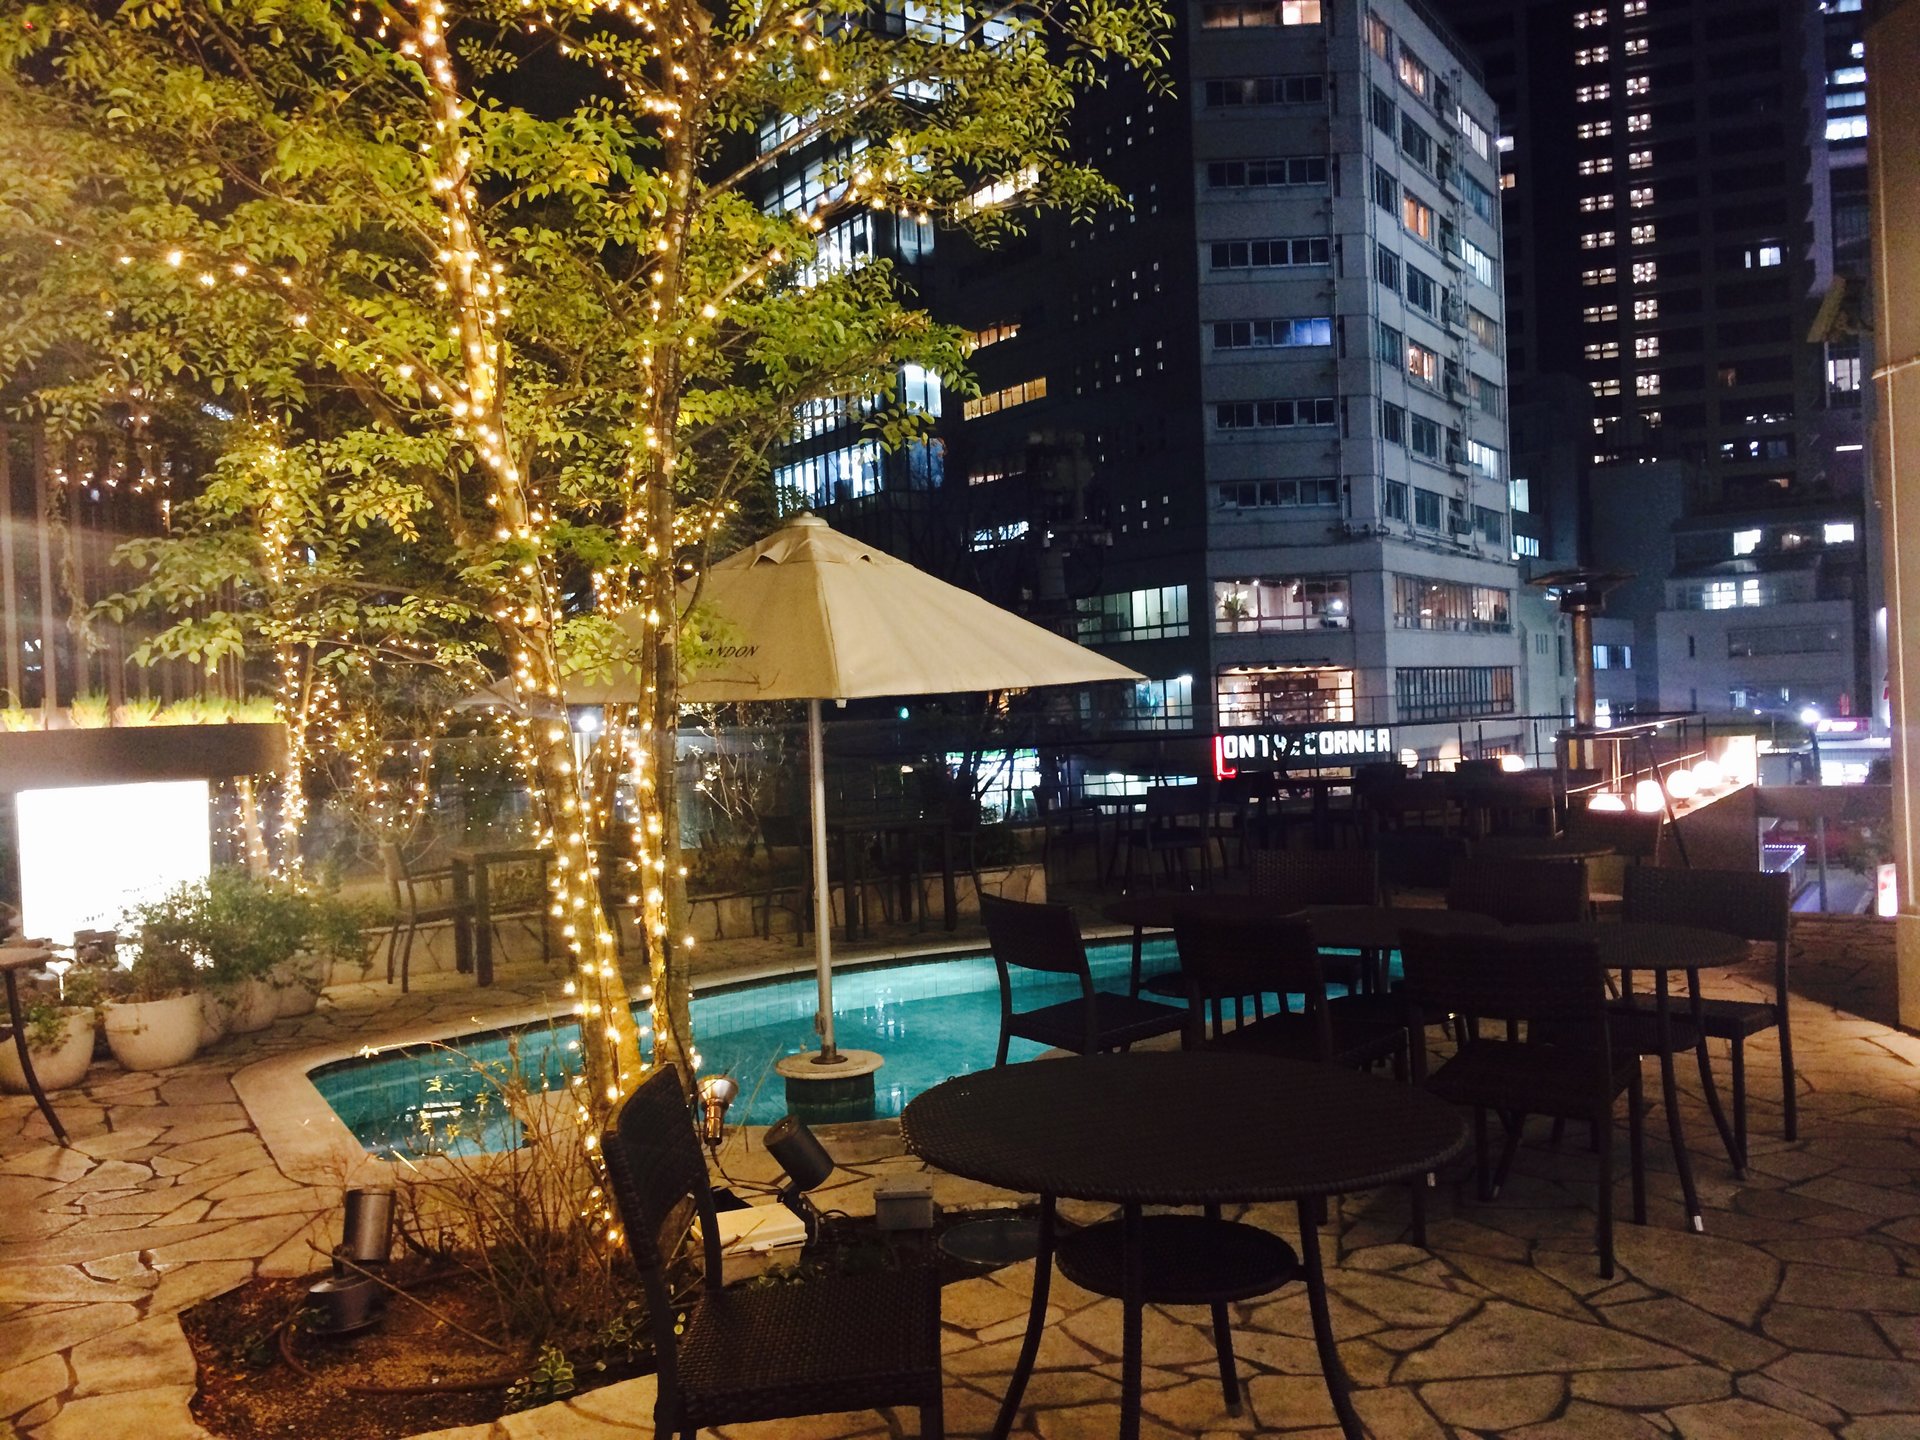 渋谷でプールがあるおしゃれな場所でディナーしちゃおう♪【347cafe】